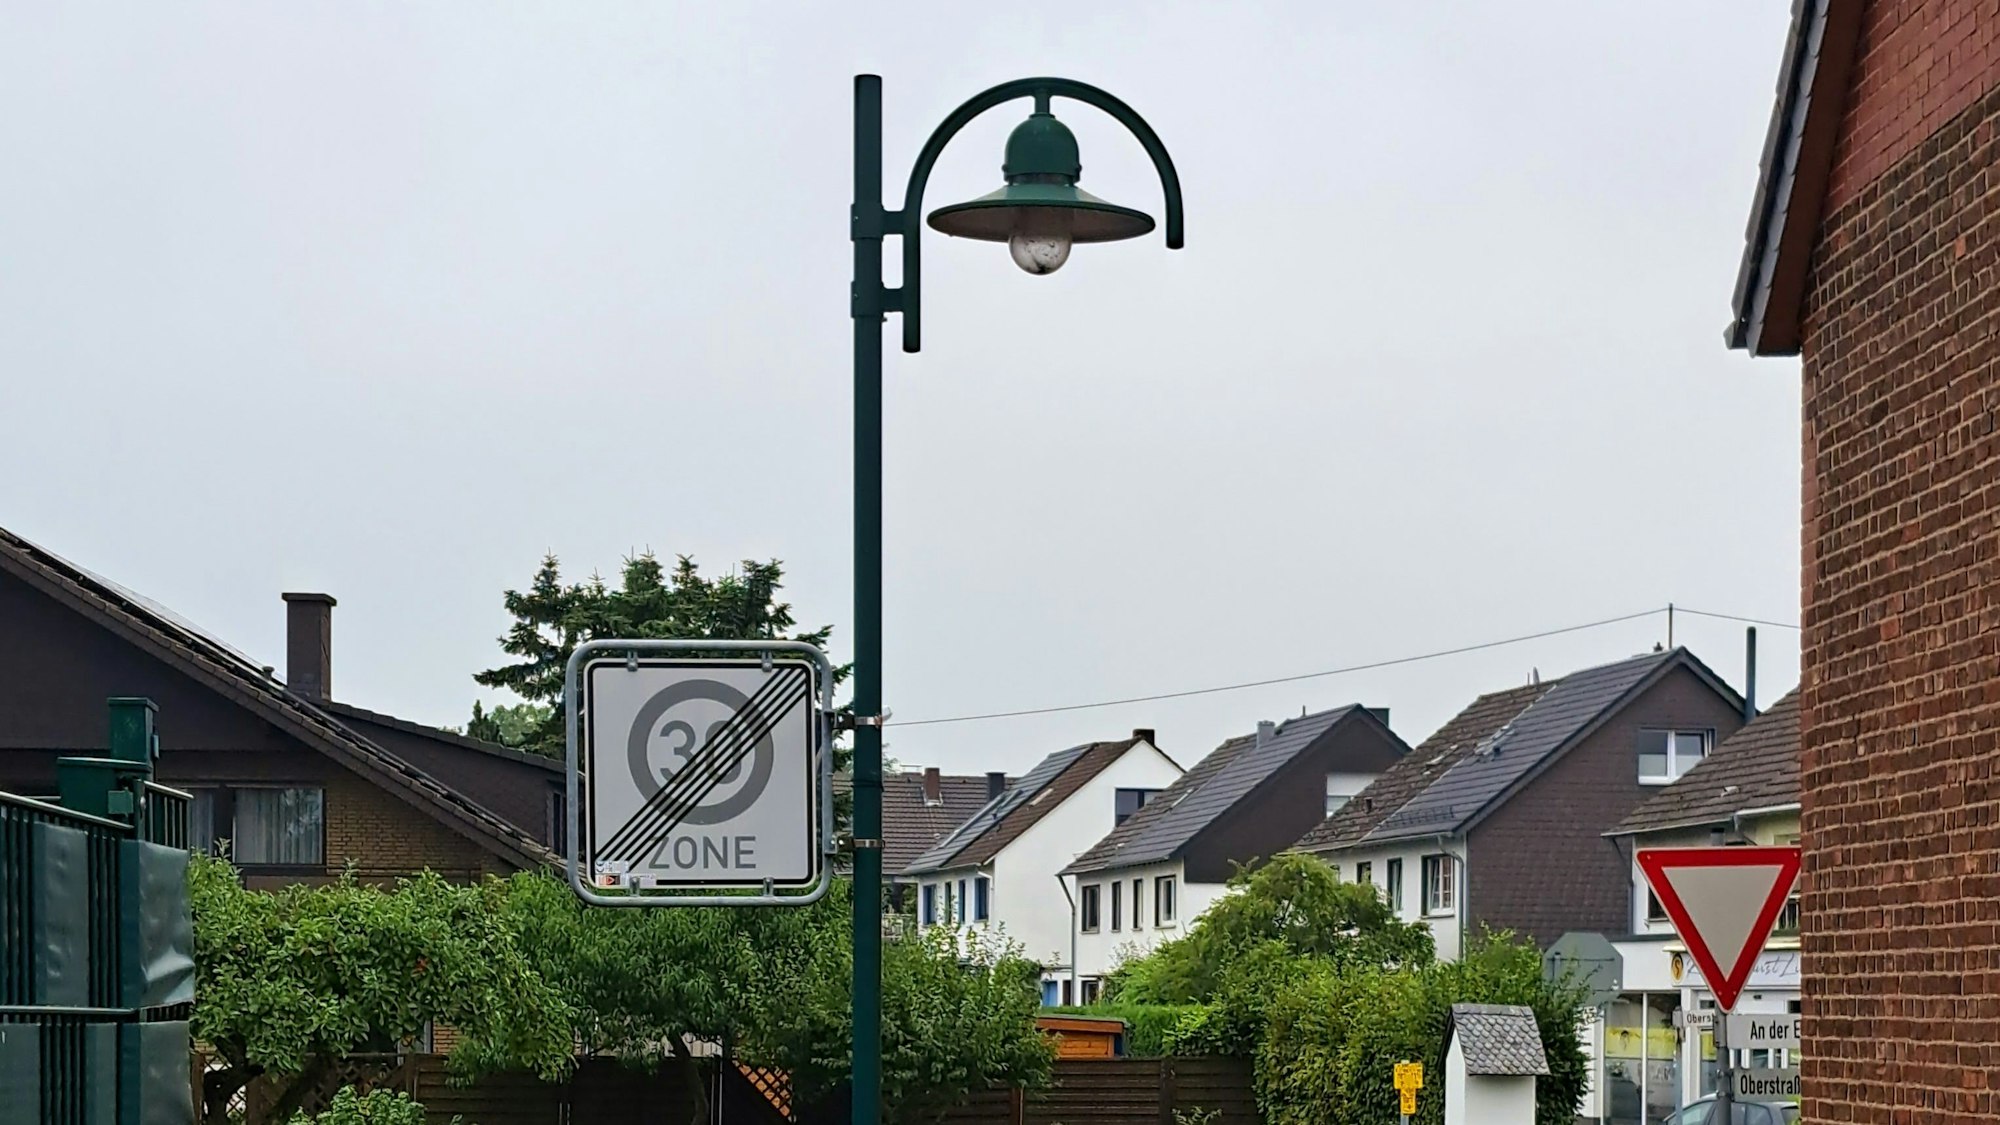 Um Energie zu sparen, soll die Straßenbeleuchtung auf den Niederkasseler Straßen auch in Zukunft zwischen 1 und 5 Uhr ausgeschaltet bleiben.